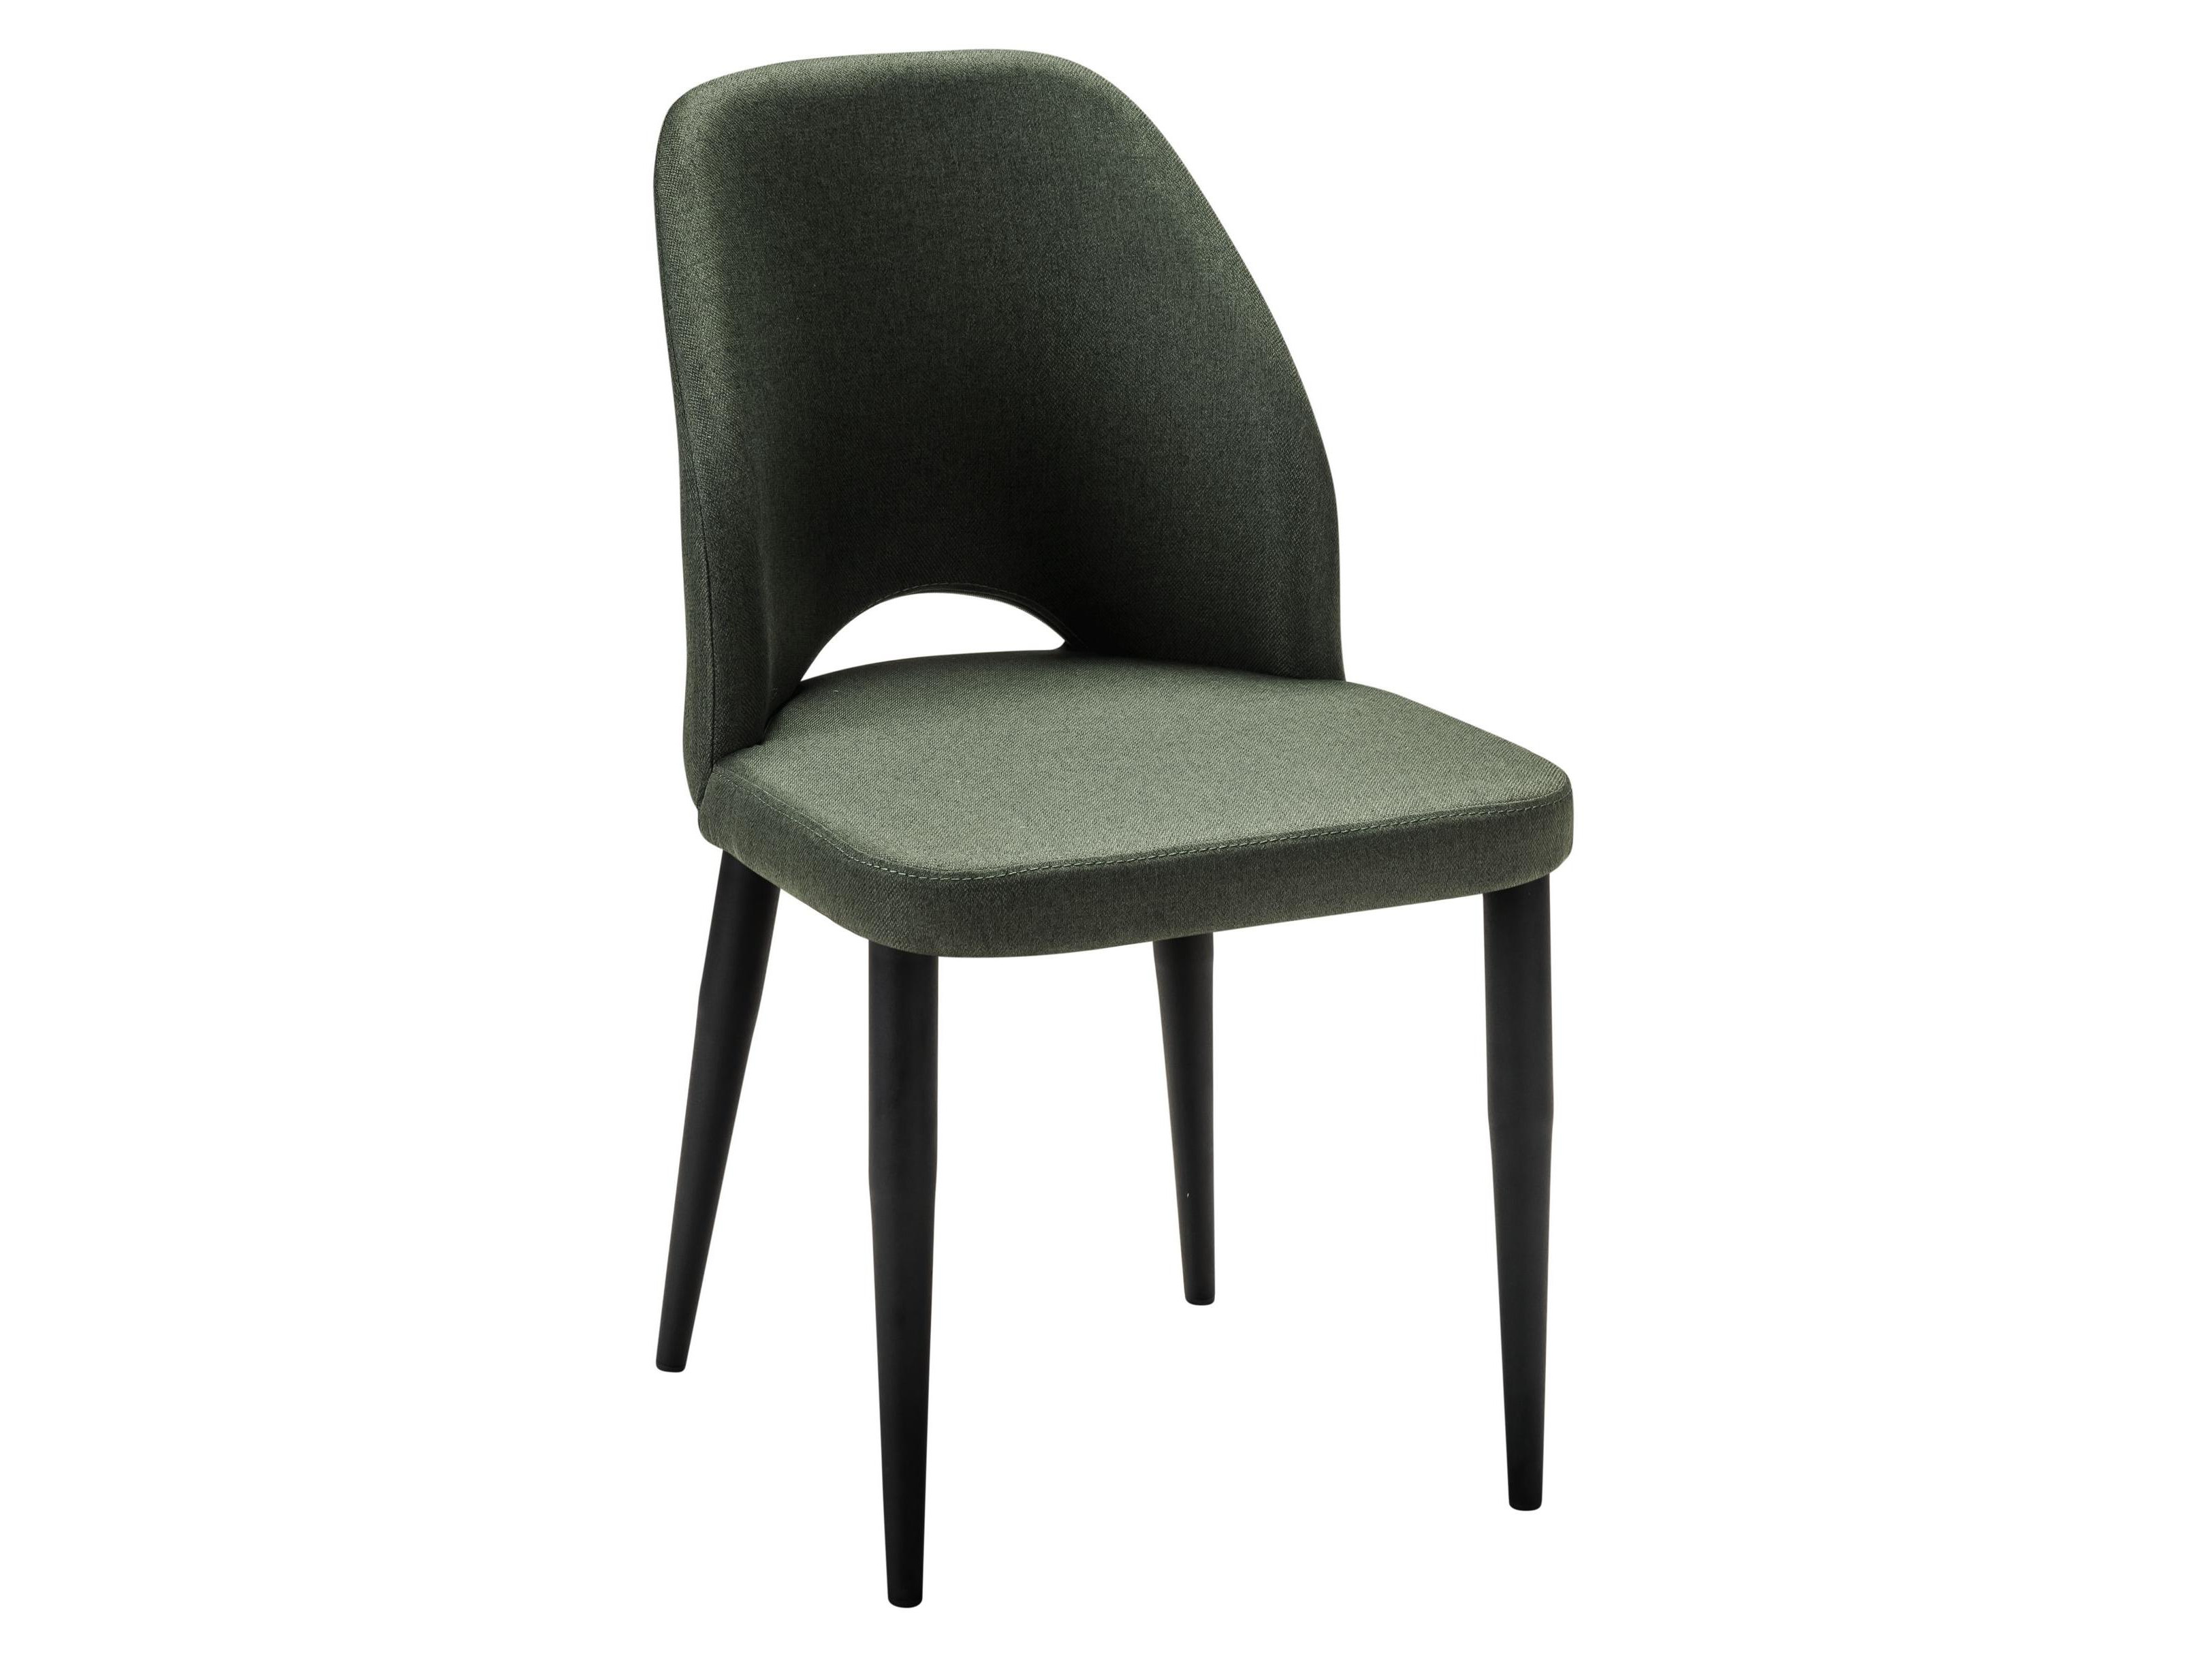 Стул Ledger темно-зеленый/черный Зеленый, Металл стул ledger синий черный синий металл